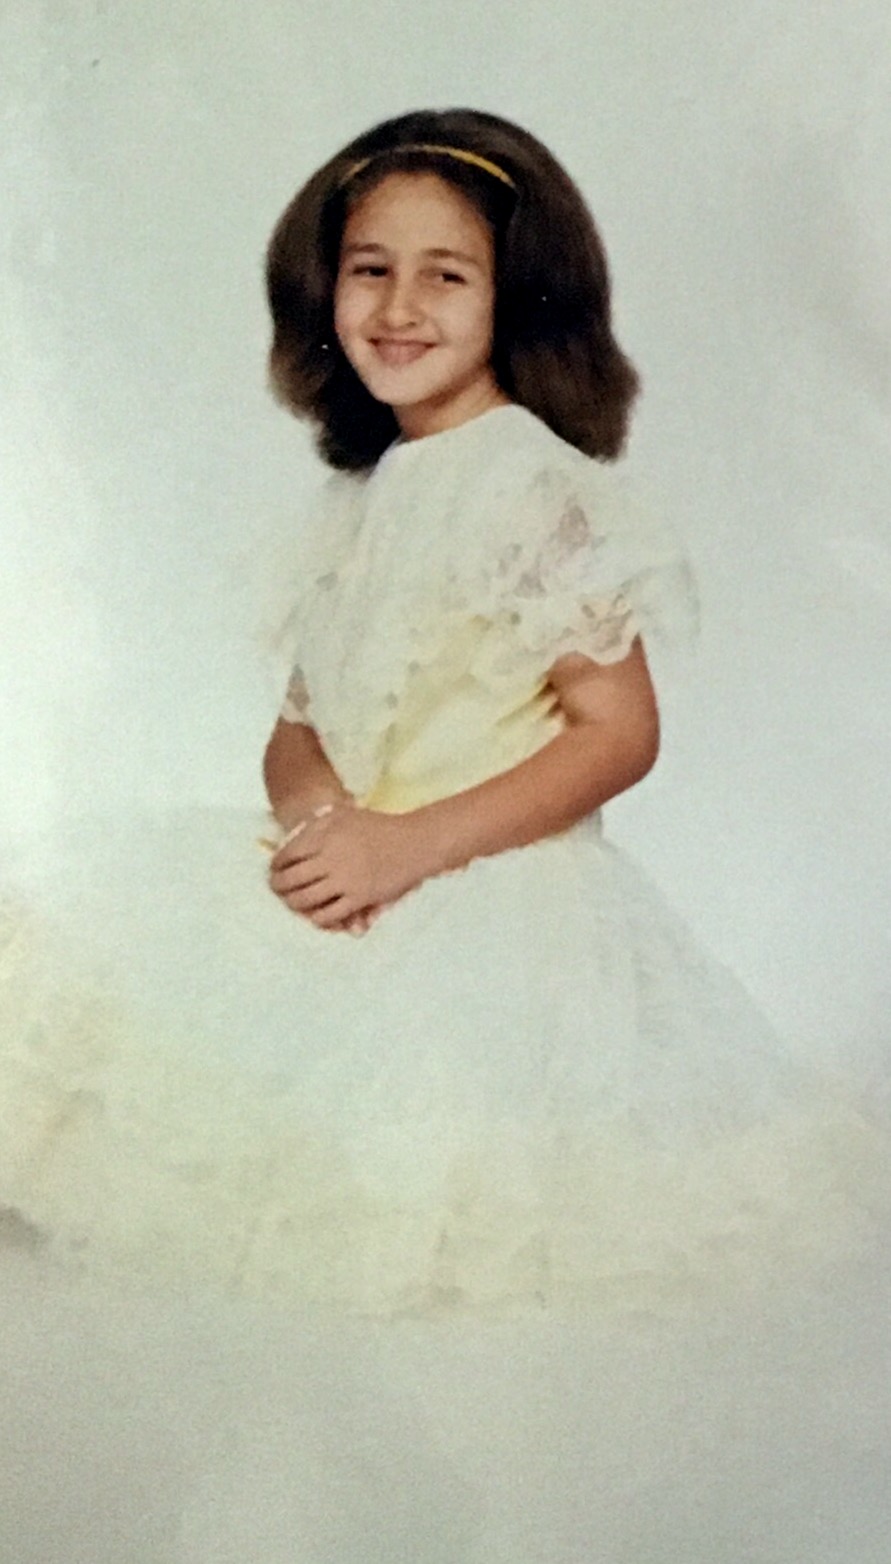 Lauren Rodriguez, San Bernardino, California, c. 1989